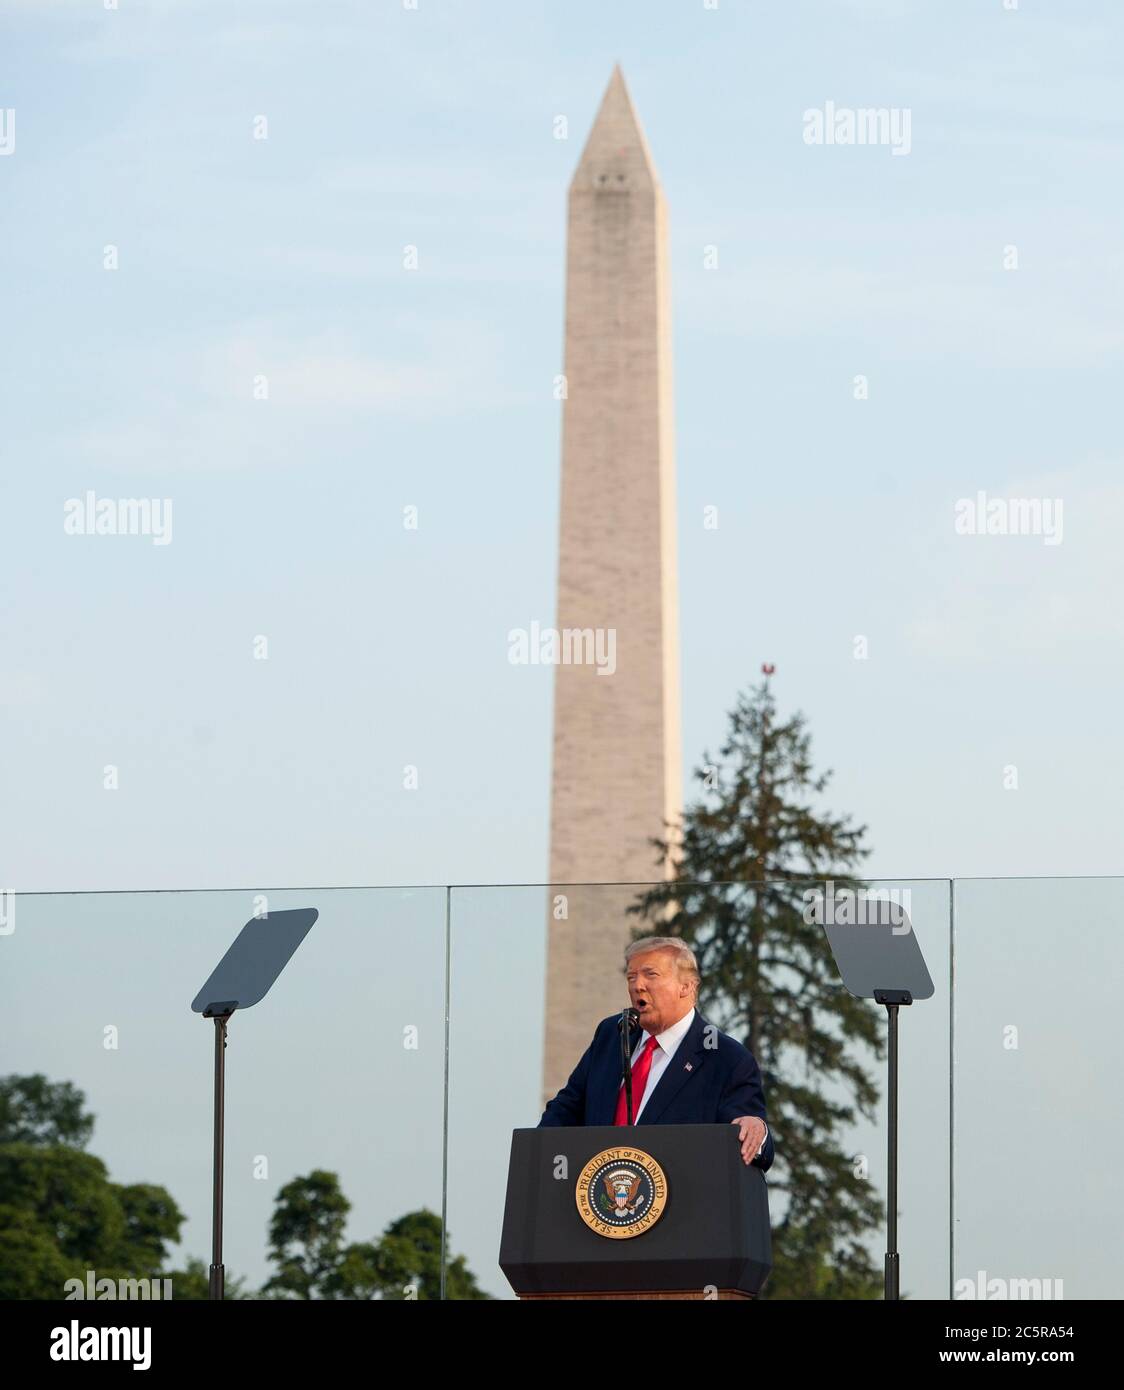 Le président Donald Trump et la première dame Melania Trump ont organisé leur événement « chute aux États-Unis » à la Maison Blanche à Washington, DC., le samedi 4 juillet 2020. (Photo de Rod Lamkey Jr./SIPA USA) crédit: SIPA USA/Alay Live News Banque D'Images